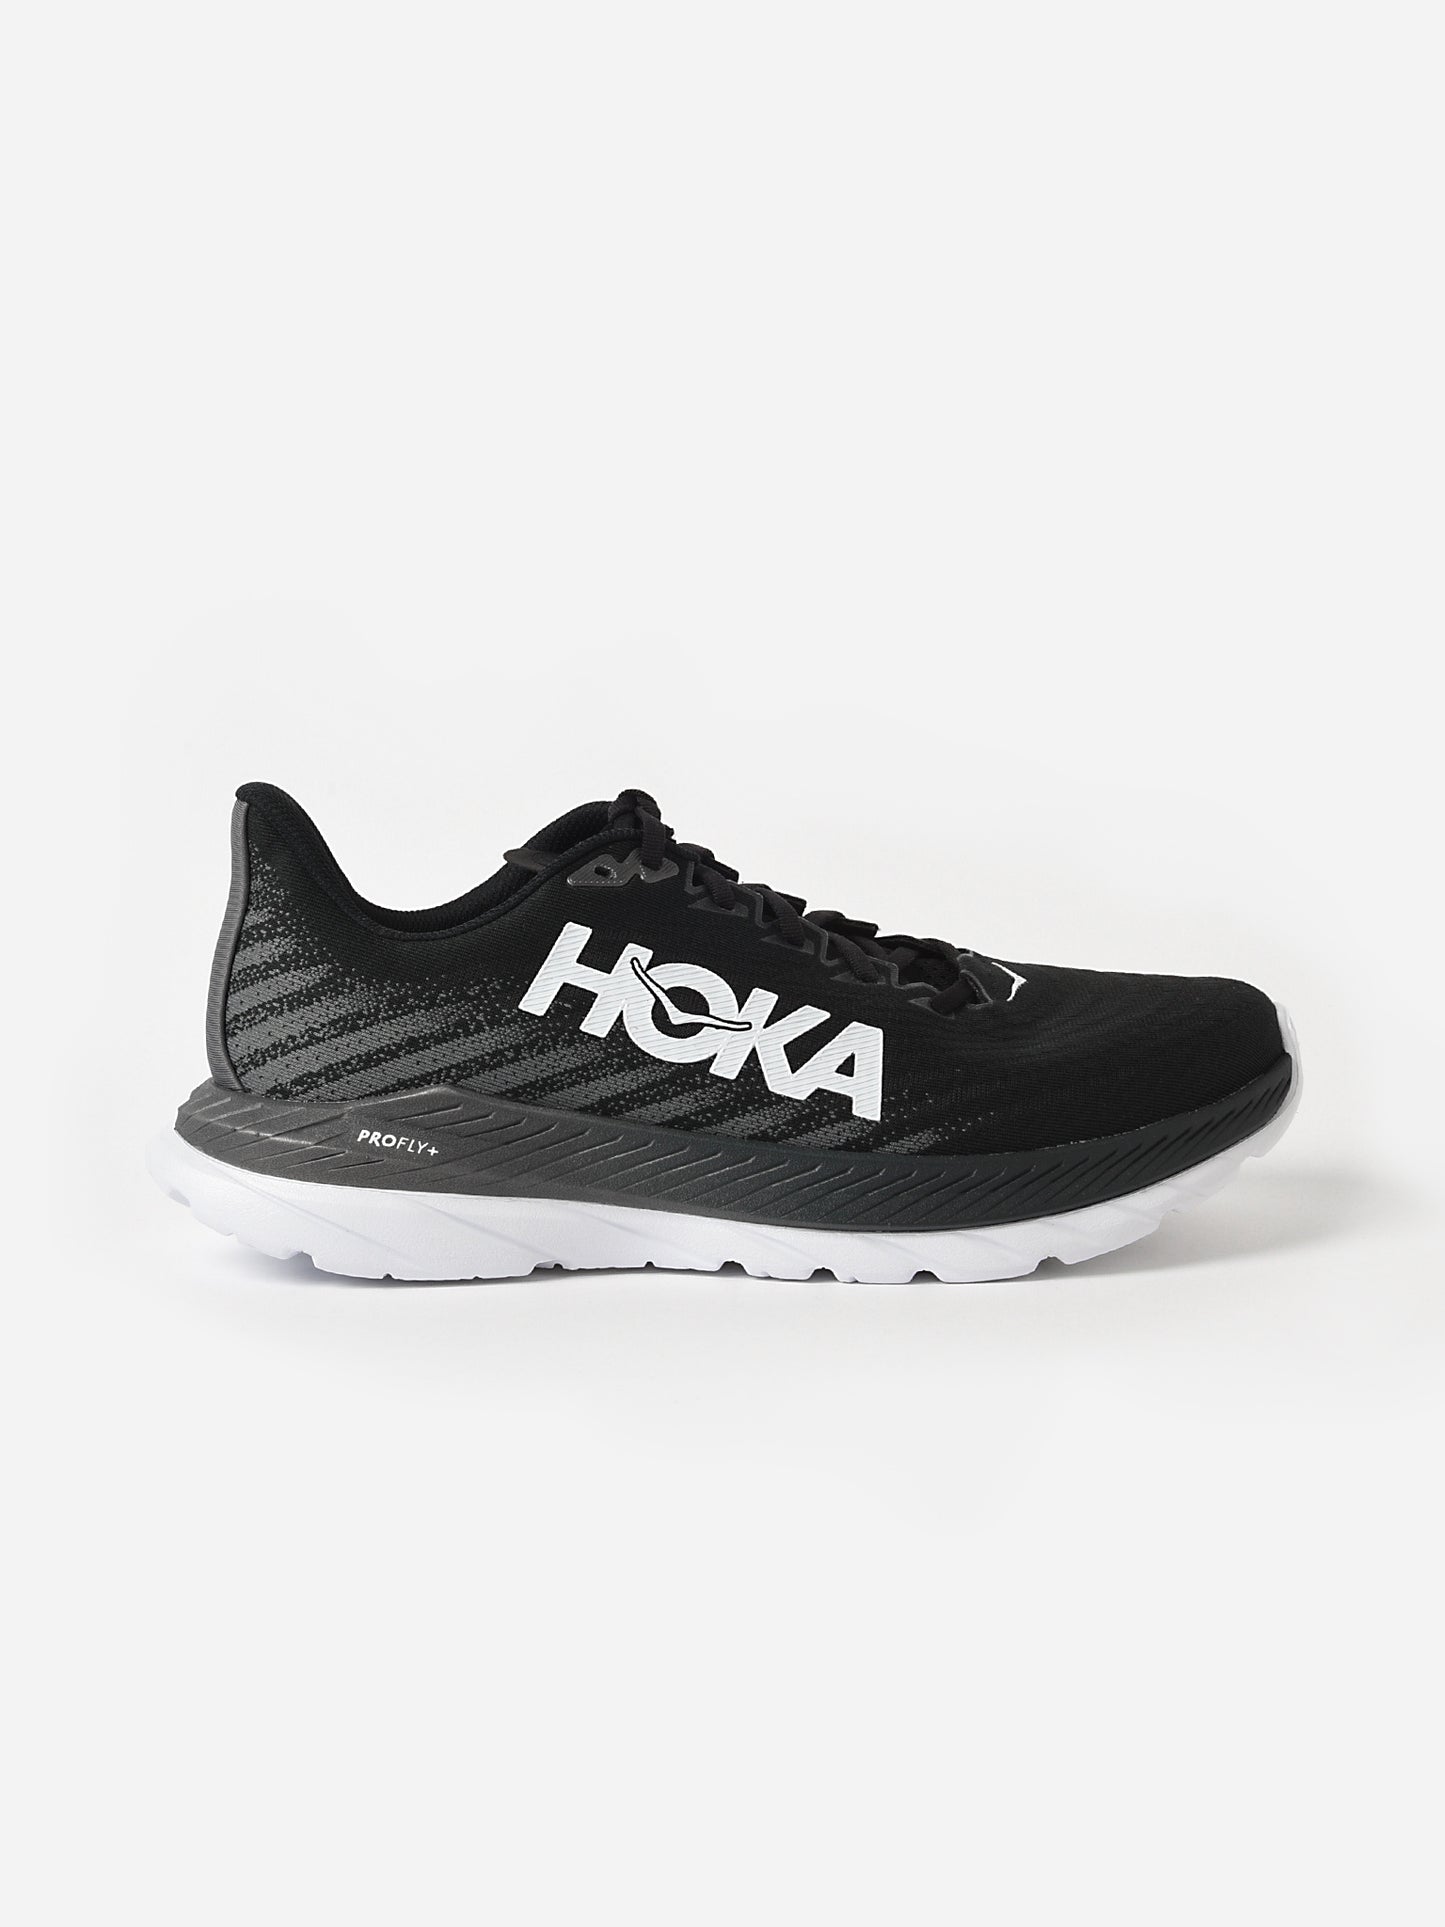 HOKA Men's Mach 5 Running Shoe